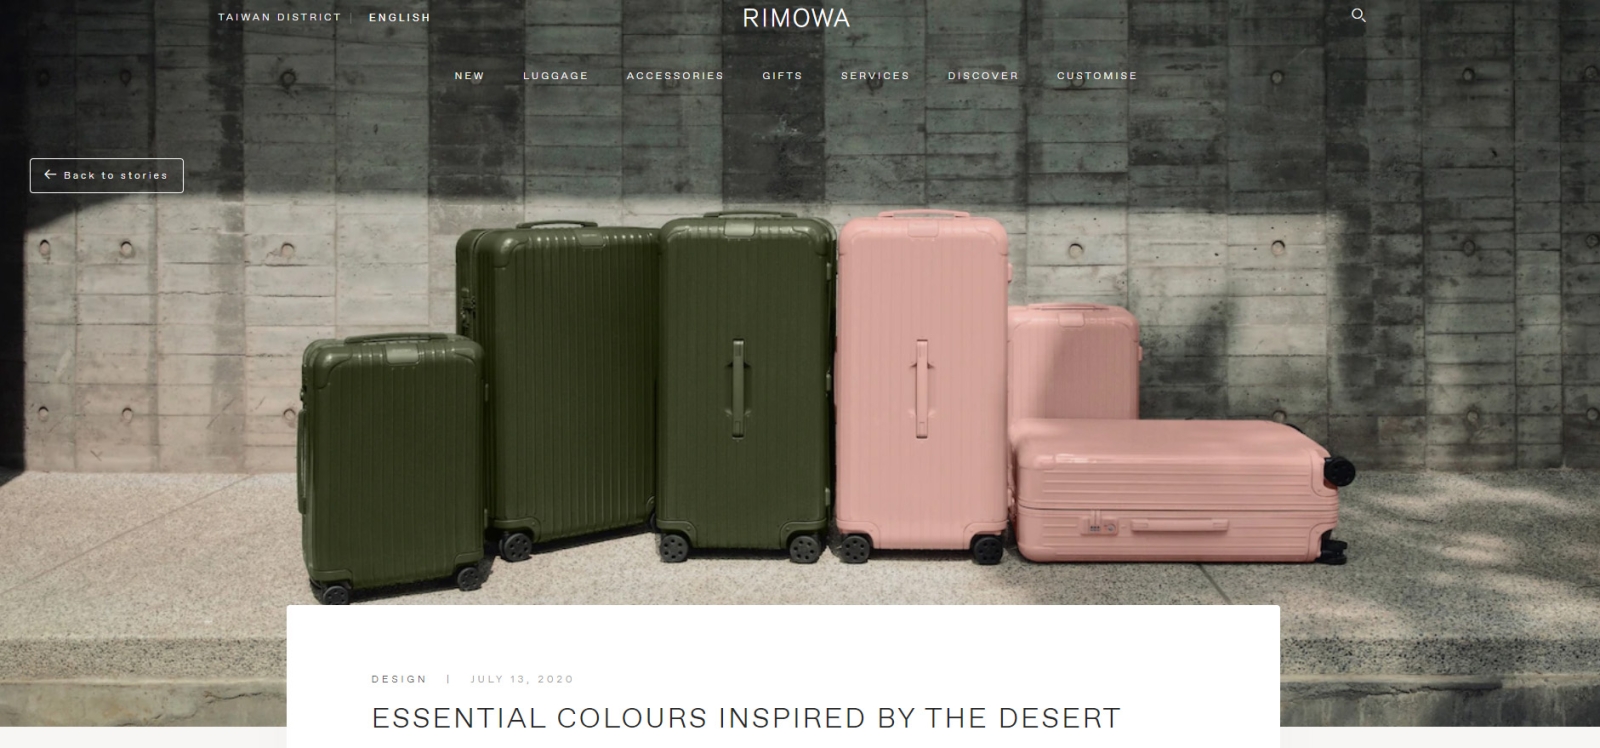 世界知名的頂級行李箱品牌Rimowa